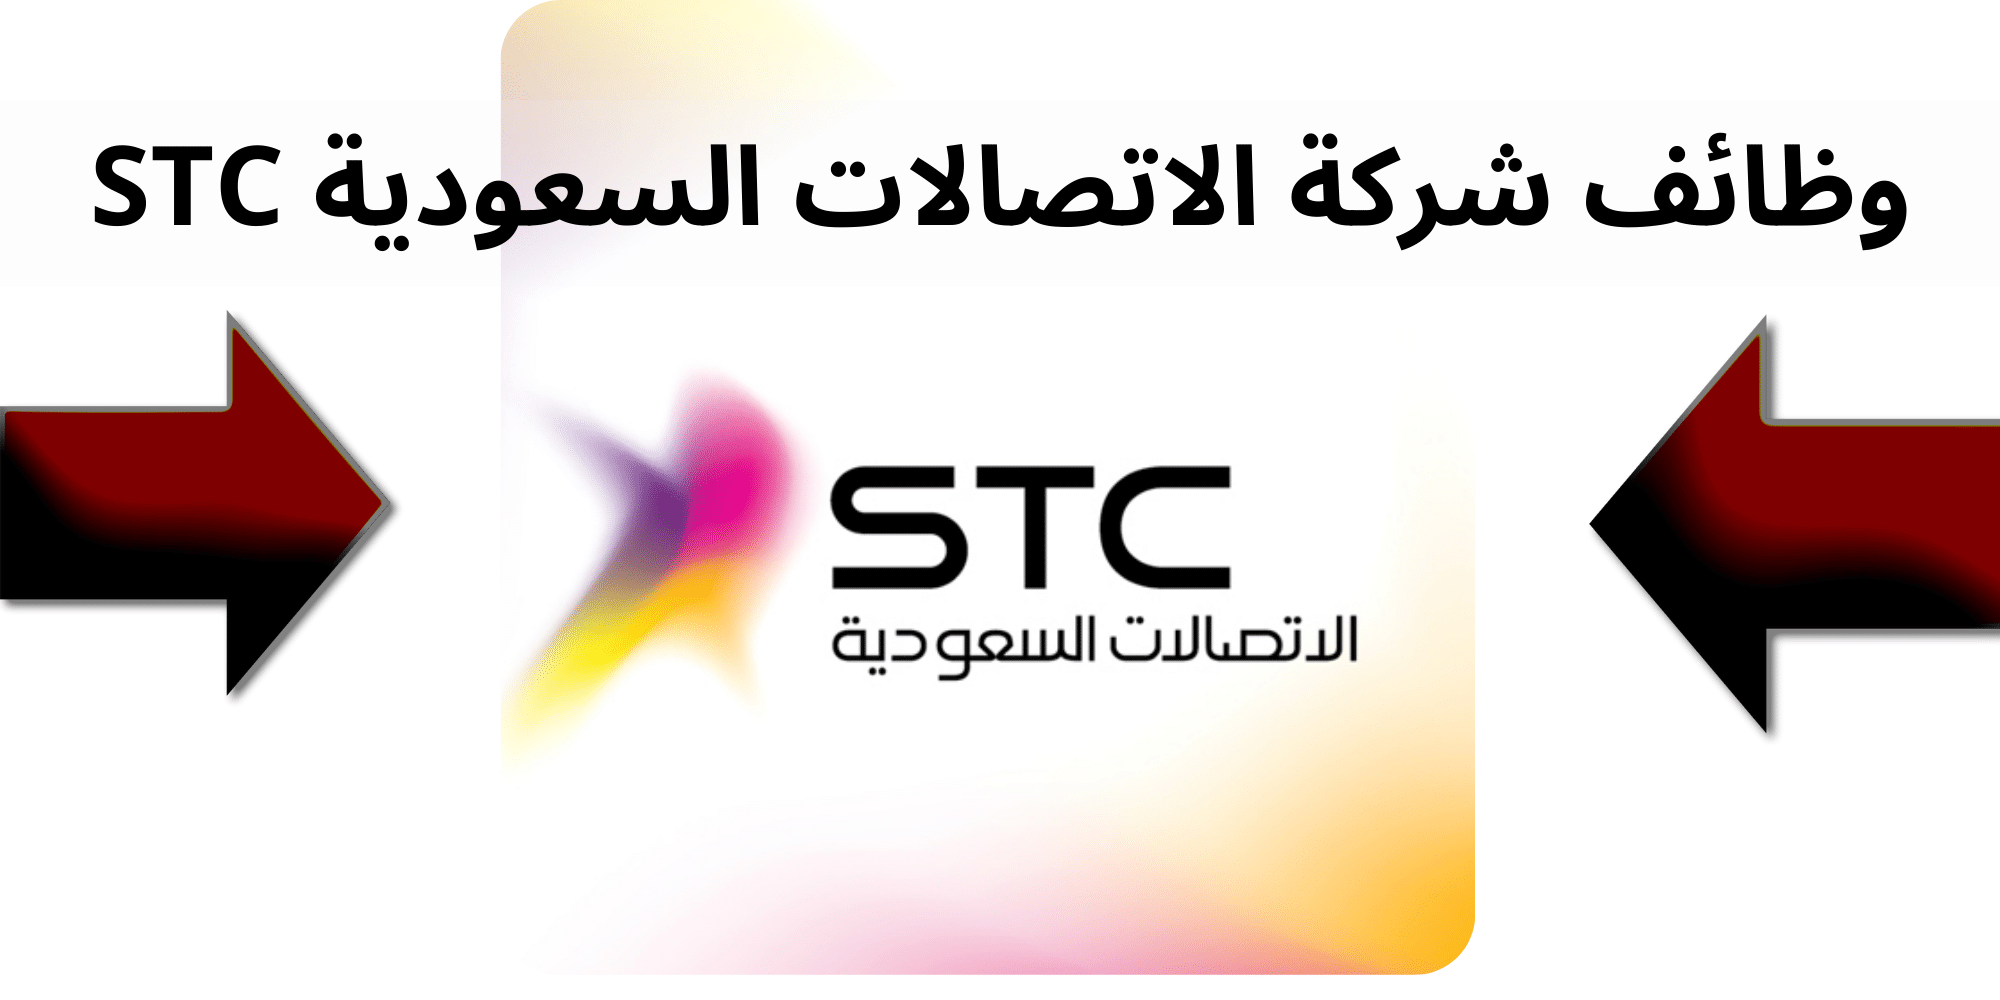 شركة الاتصالات السعودية STC تعلن عن توافر وظائف شاغرة بالمركز الرئيسي